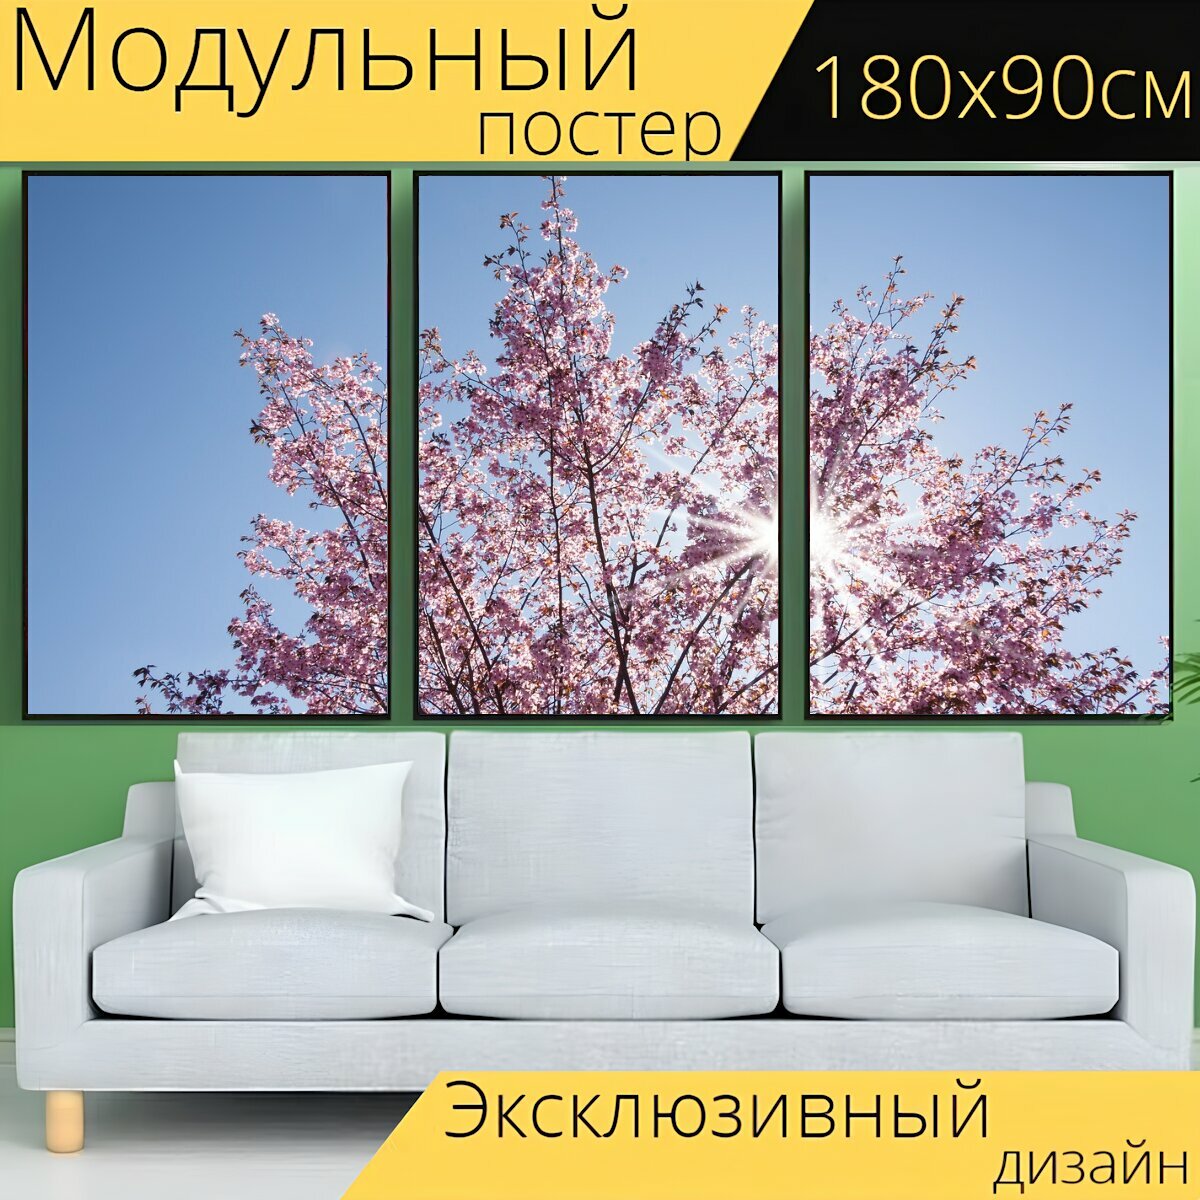 Модульный постер "Весна, вишня в цвету, японская вишня" 180 x 90 см. для интерьера